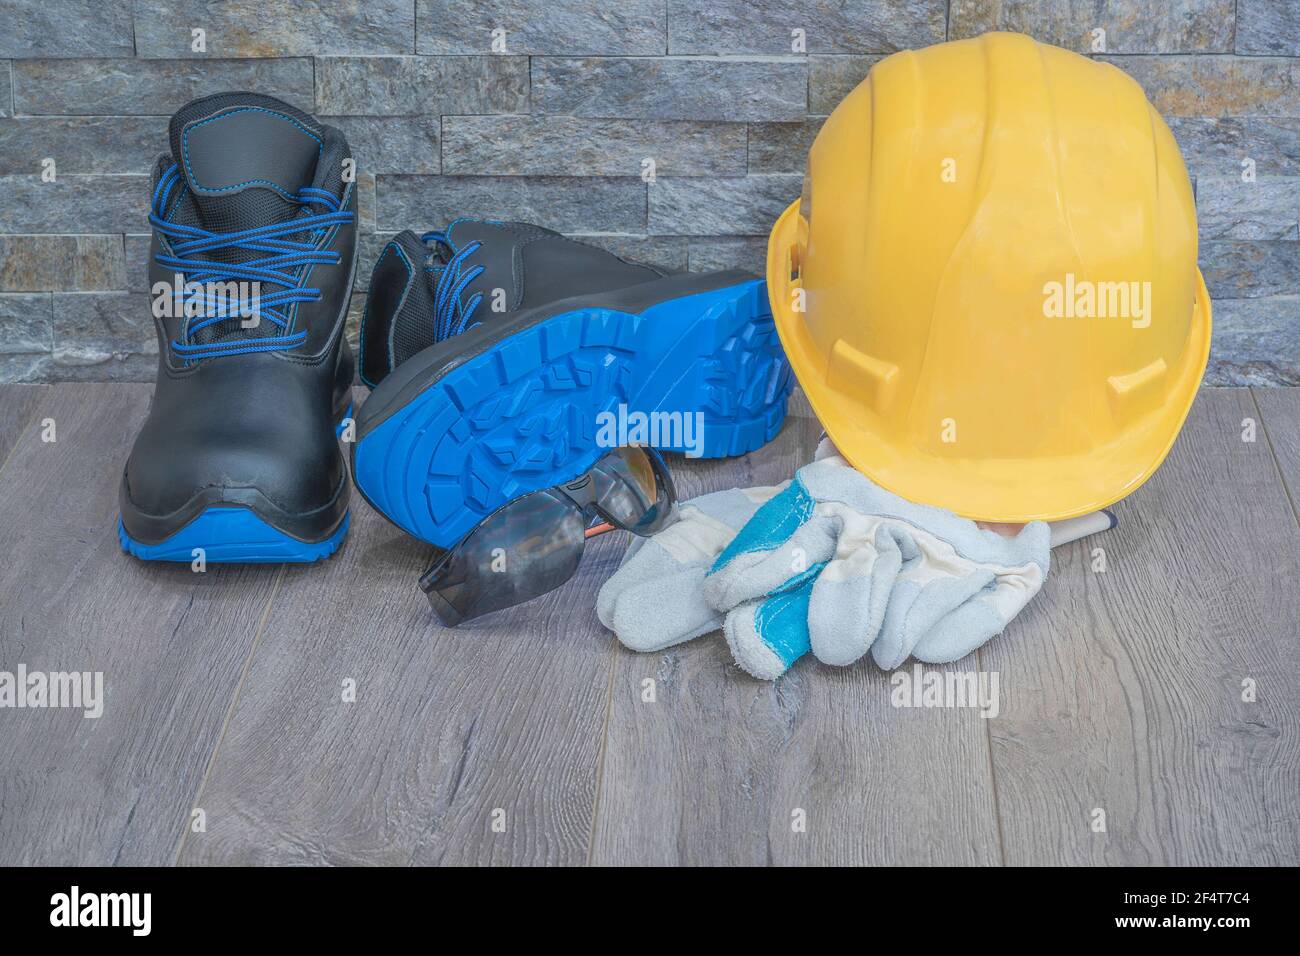 Persönliche Schutzausrüstung zum Schutz am Arbeitsplatz mit erhöhtem Risiko Verletzung Stockfoto